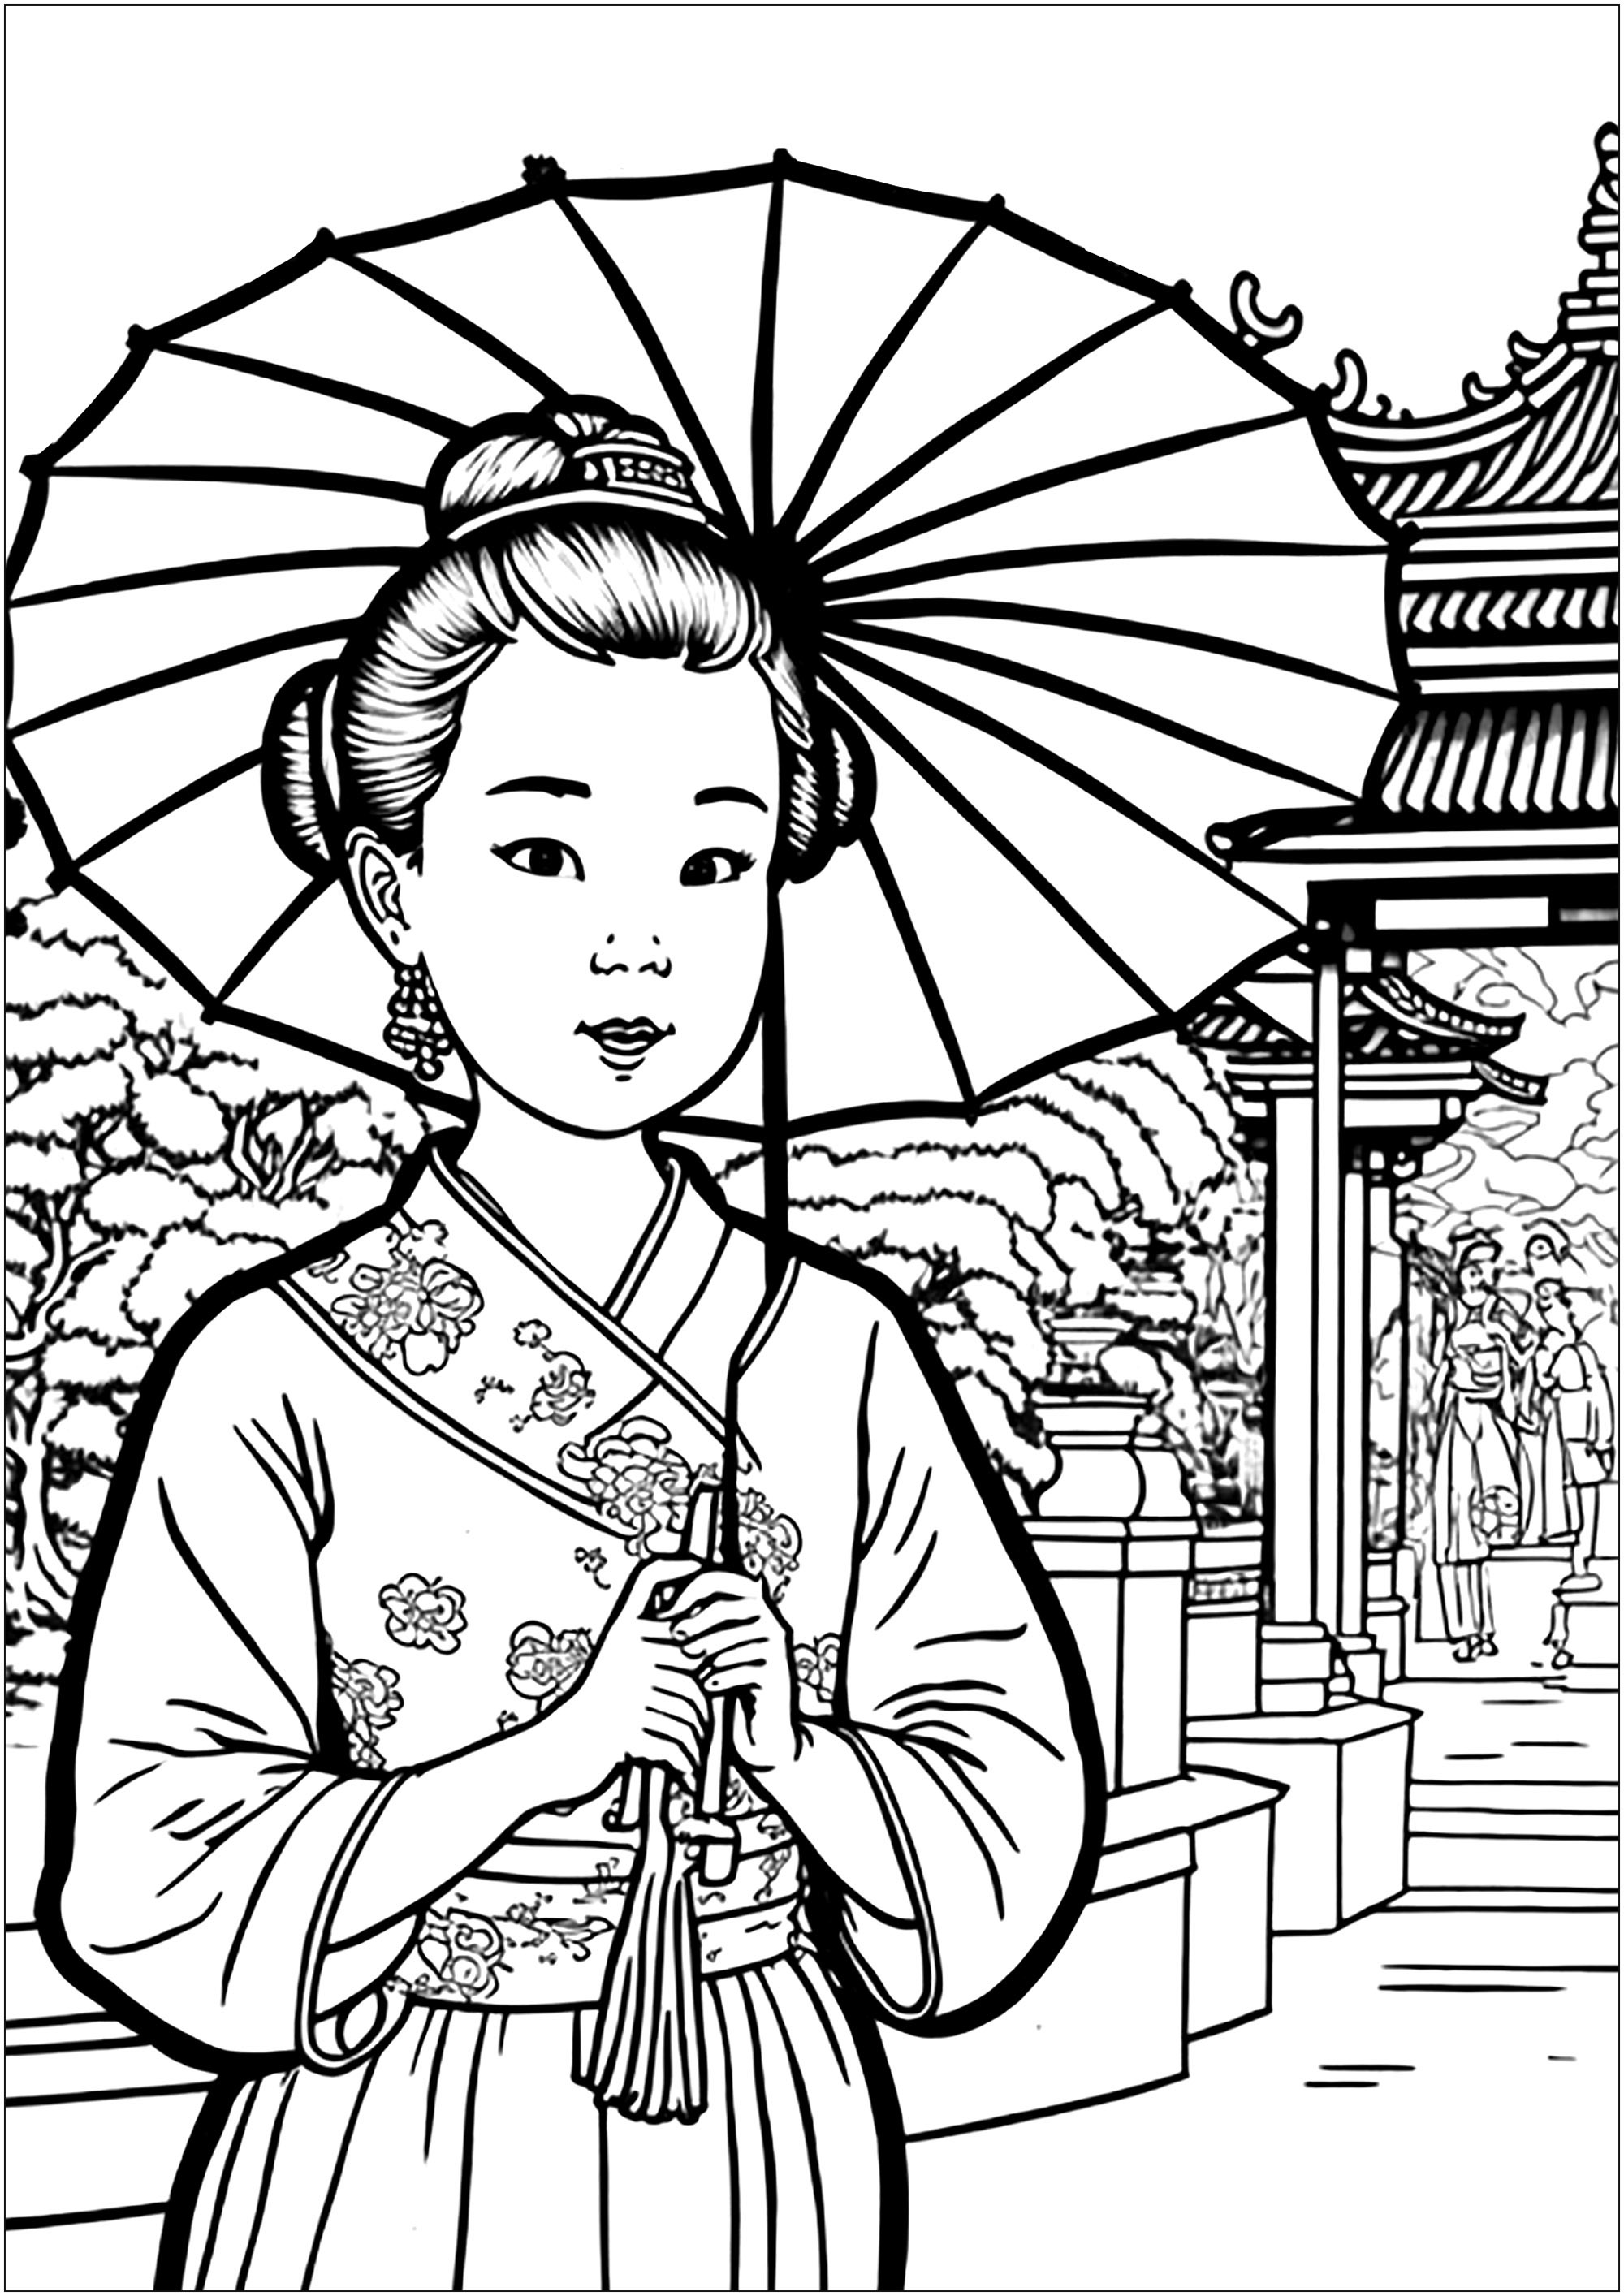 Une jolie chinoise en kimono avec une belle ombrelle. La jeune femme porte un magnifique kimono aux couleurs vives et un chapeau traditionnel. Elle tient une jolie ombrelle en papier qui complète sa tenue. Tout autour, un joli temple et un jardin typique sont à colorier.